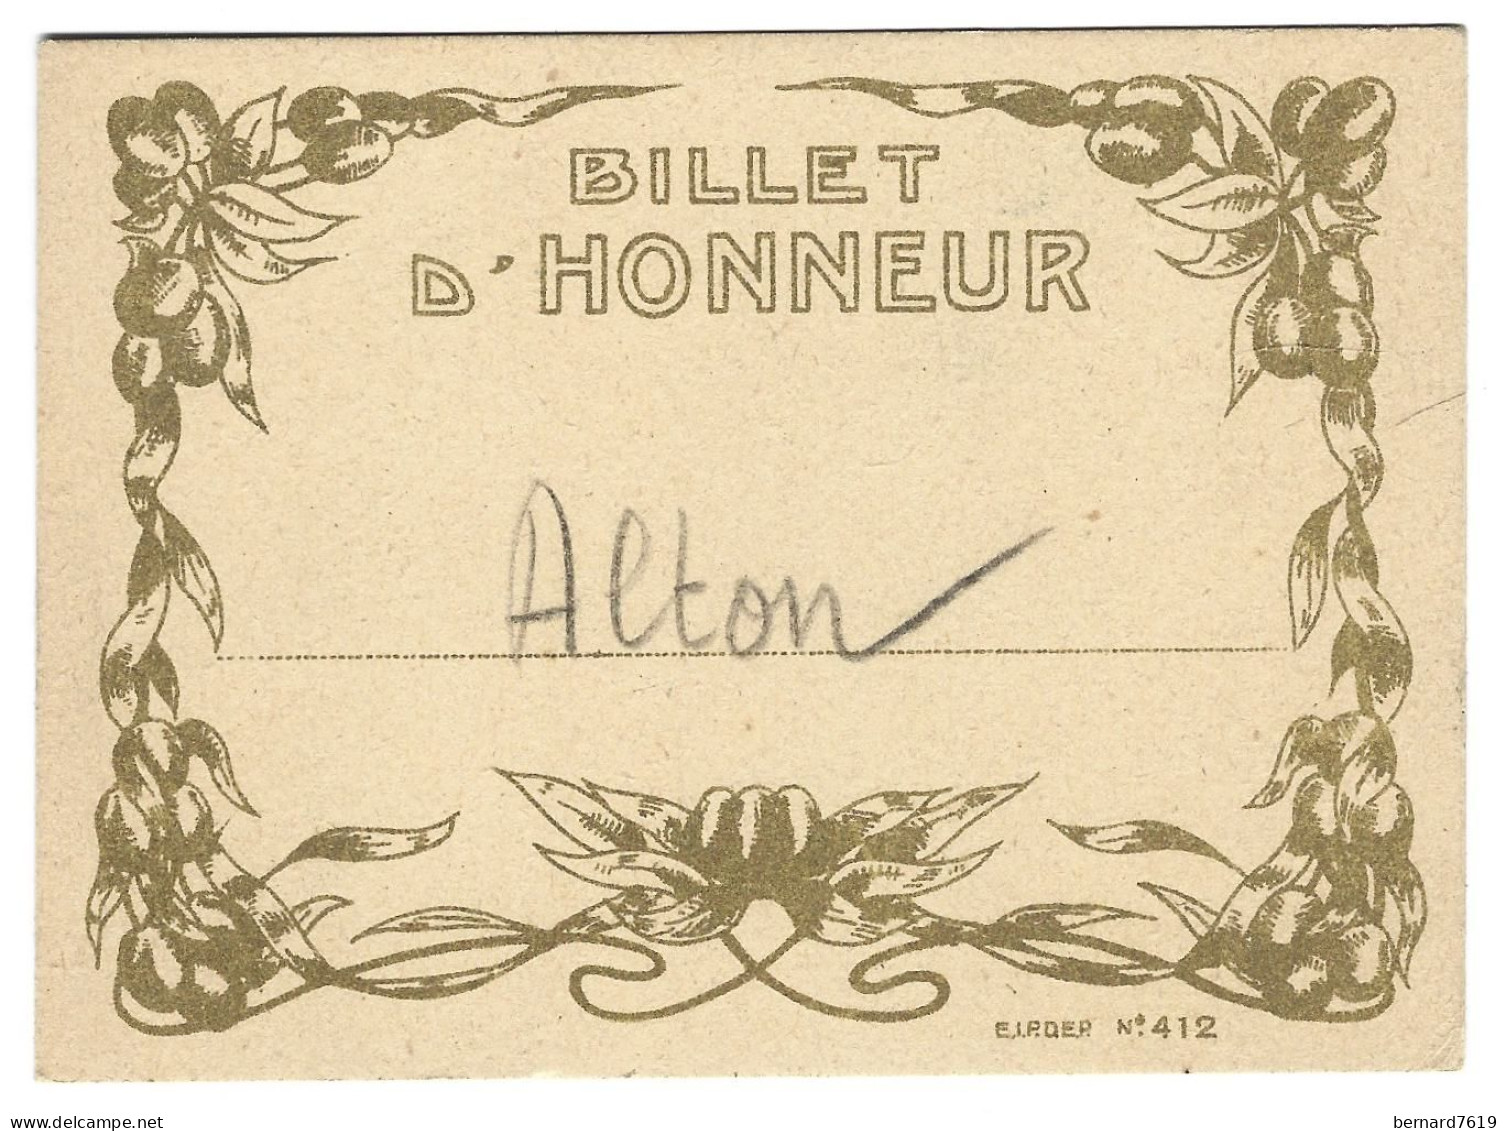 Billet D'honneur Alton -ecole - Diplomas Y Calificaciones Escolares